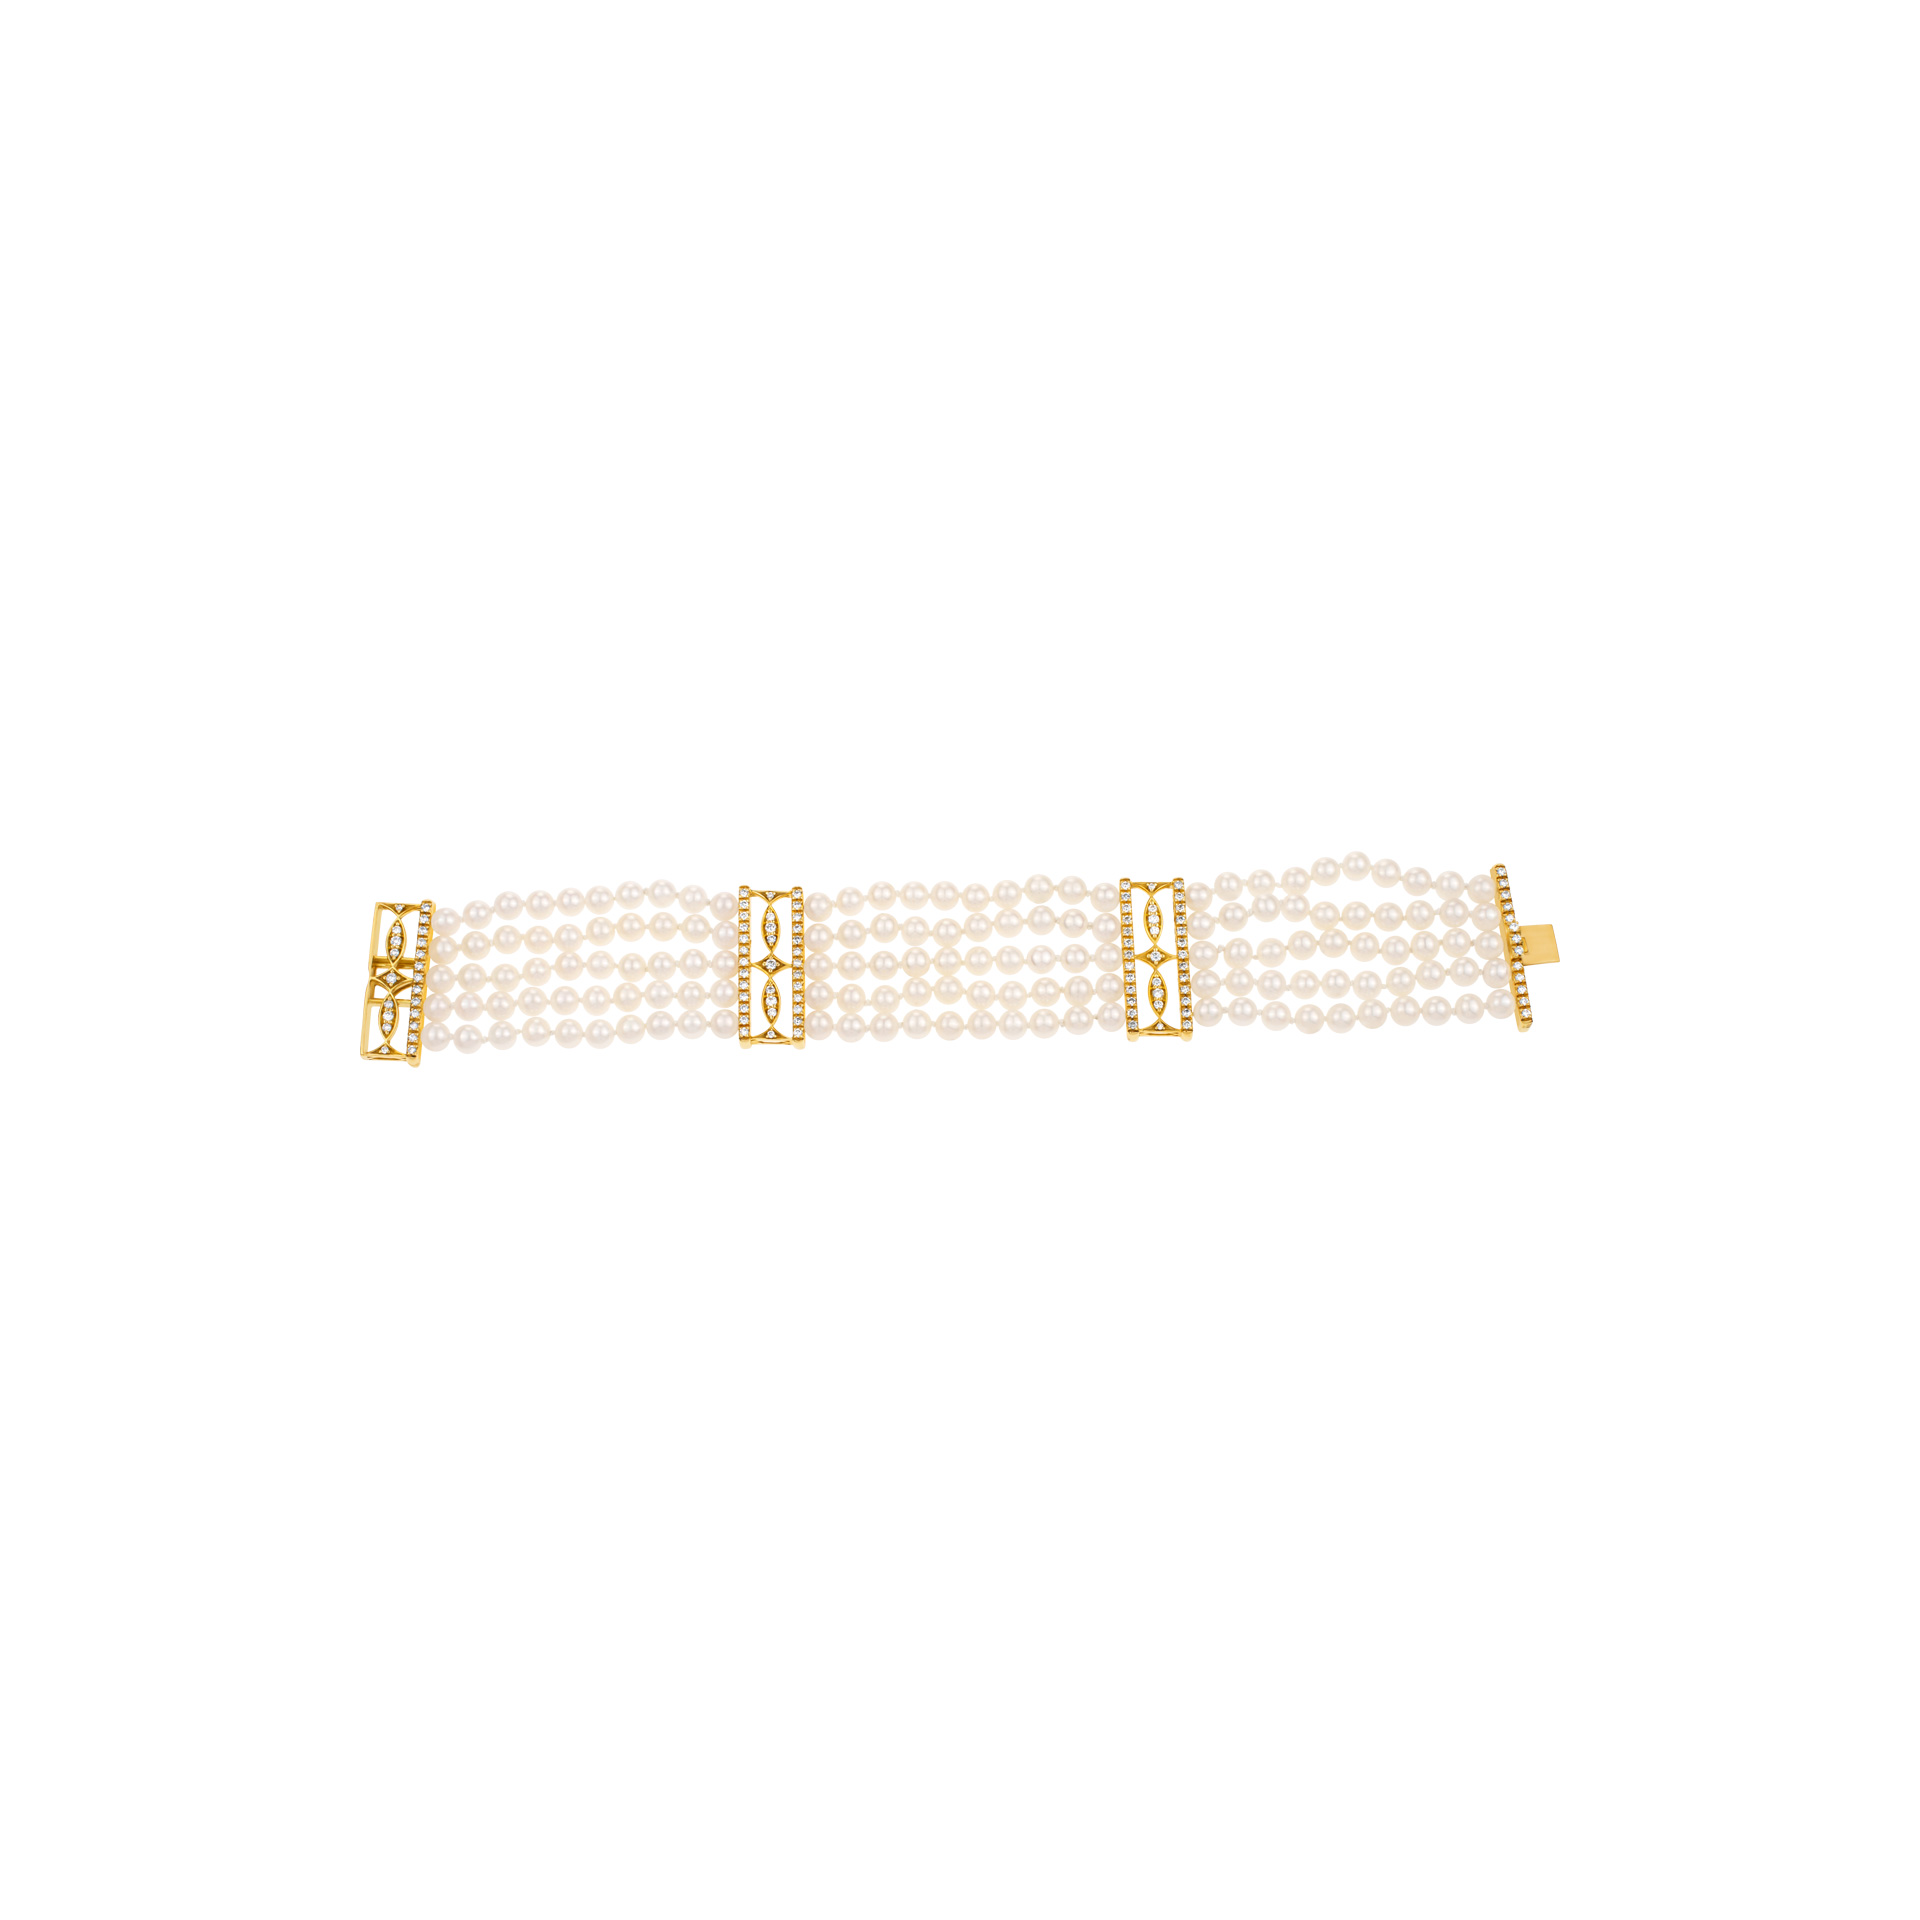 Five strand pearl bracelet in 18K gold with diamonds